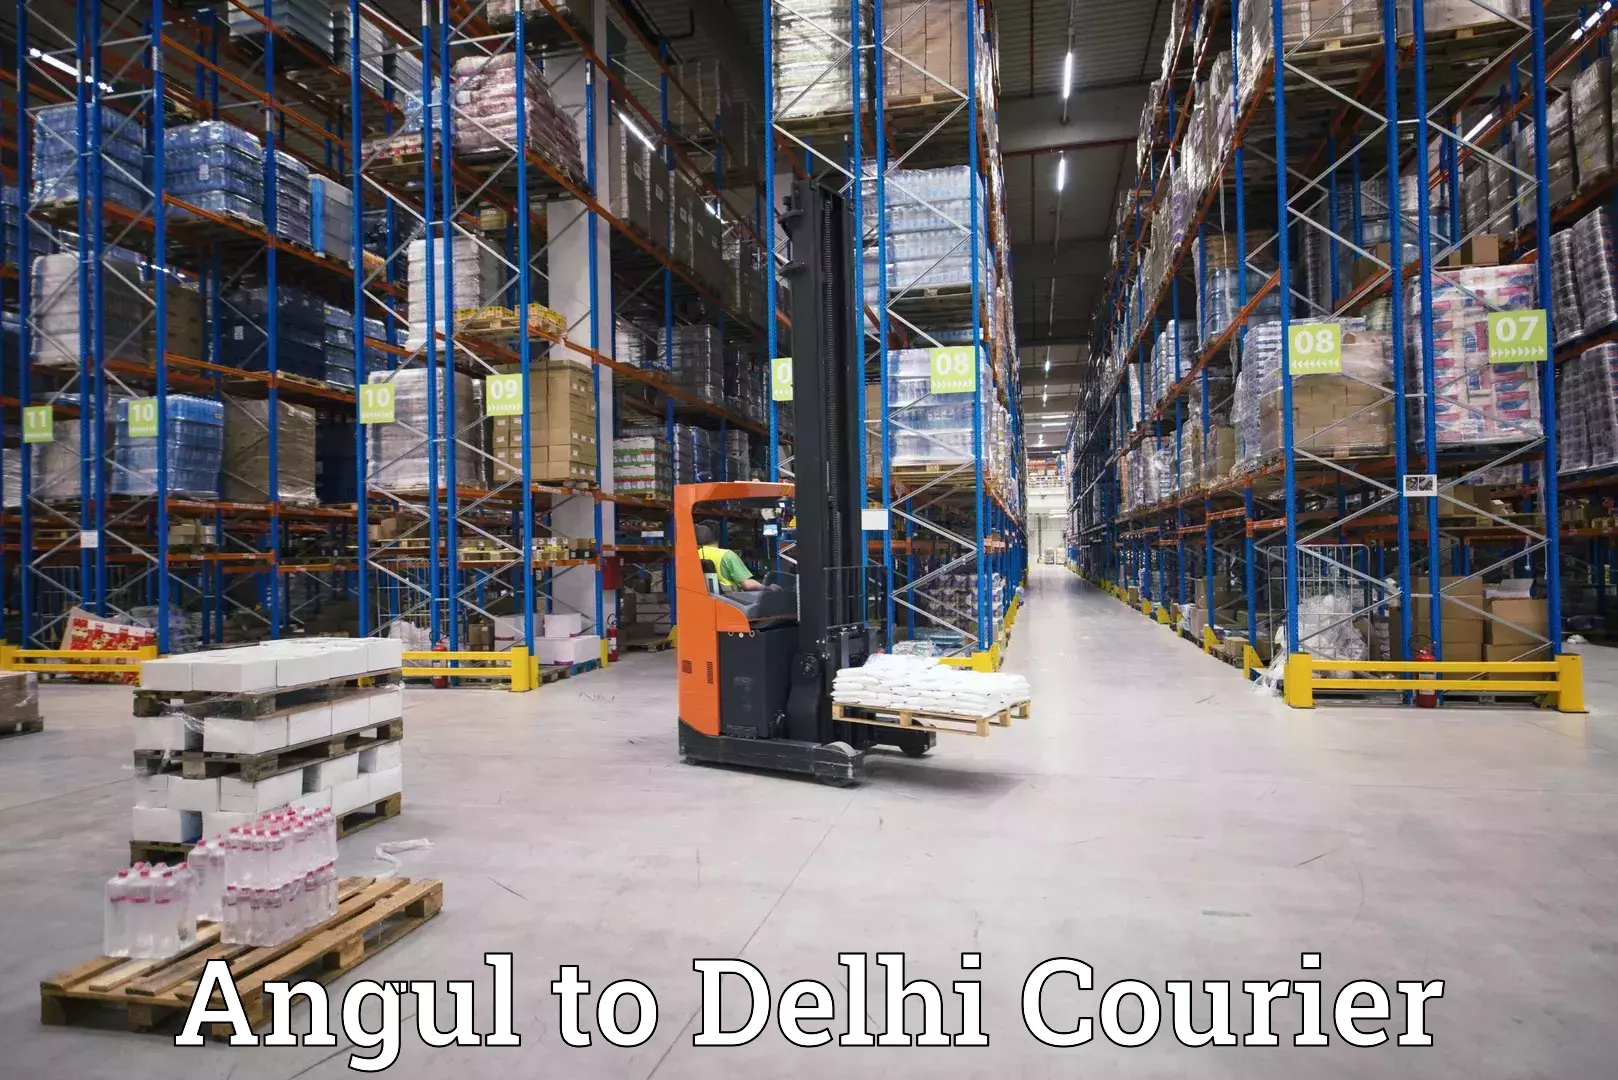 Customer-centric shipping Angul to Kalkaji